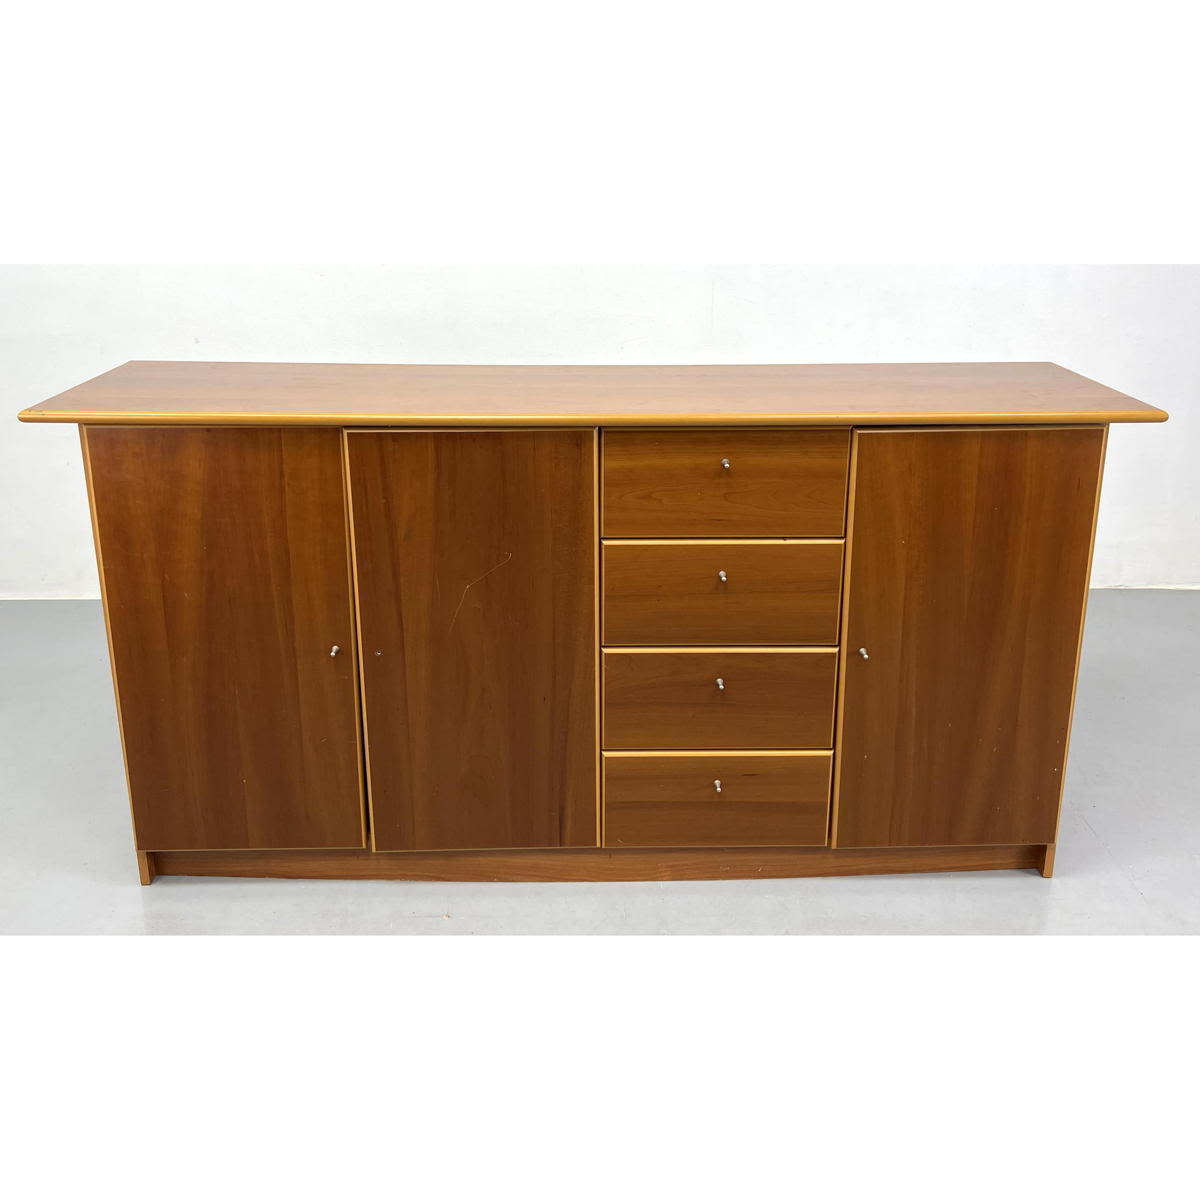 Modernist Credenza. Wood Cabinet